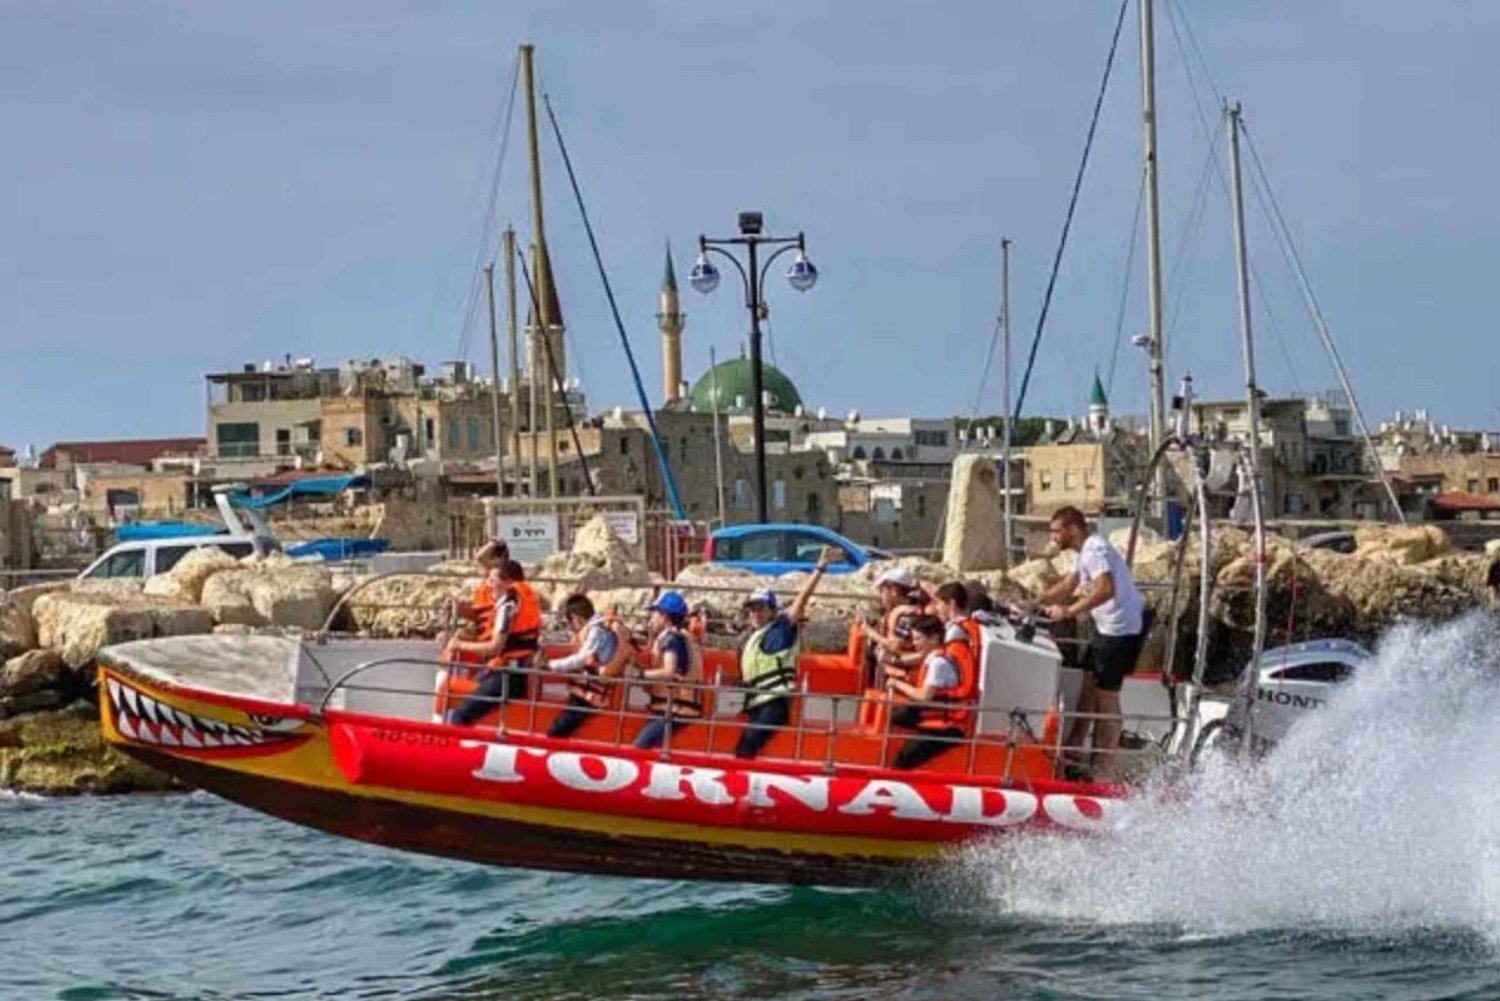 Tel Aviv: Tornado High Speed Thrill Boat Ride from Jaffa